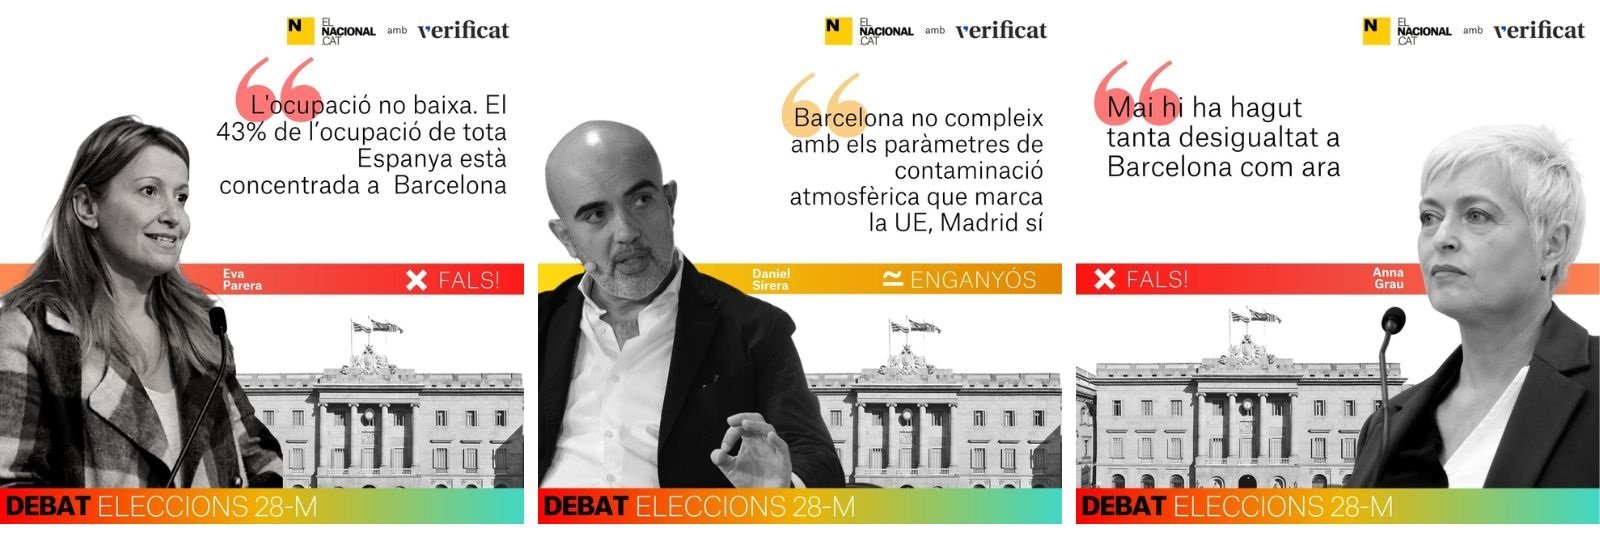 Verificaciones del debate de Barcelona de elecciones municipales ElNacional.cat y Verificado